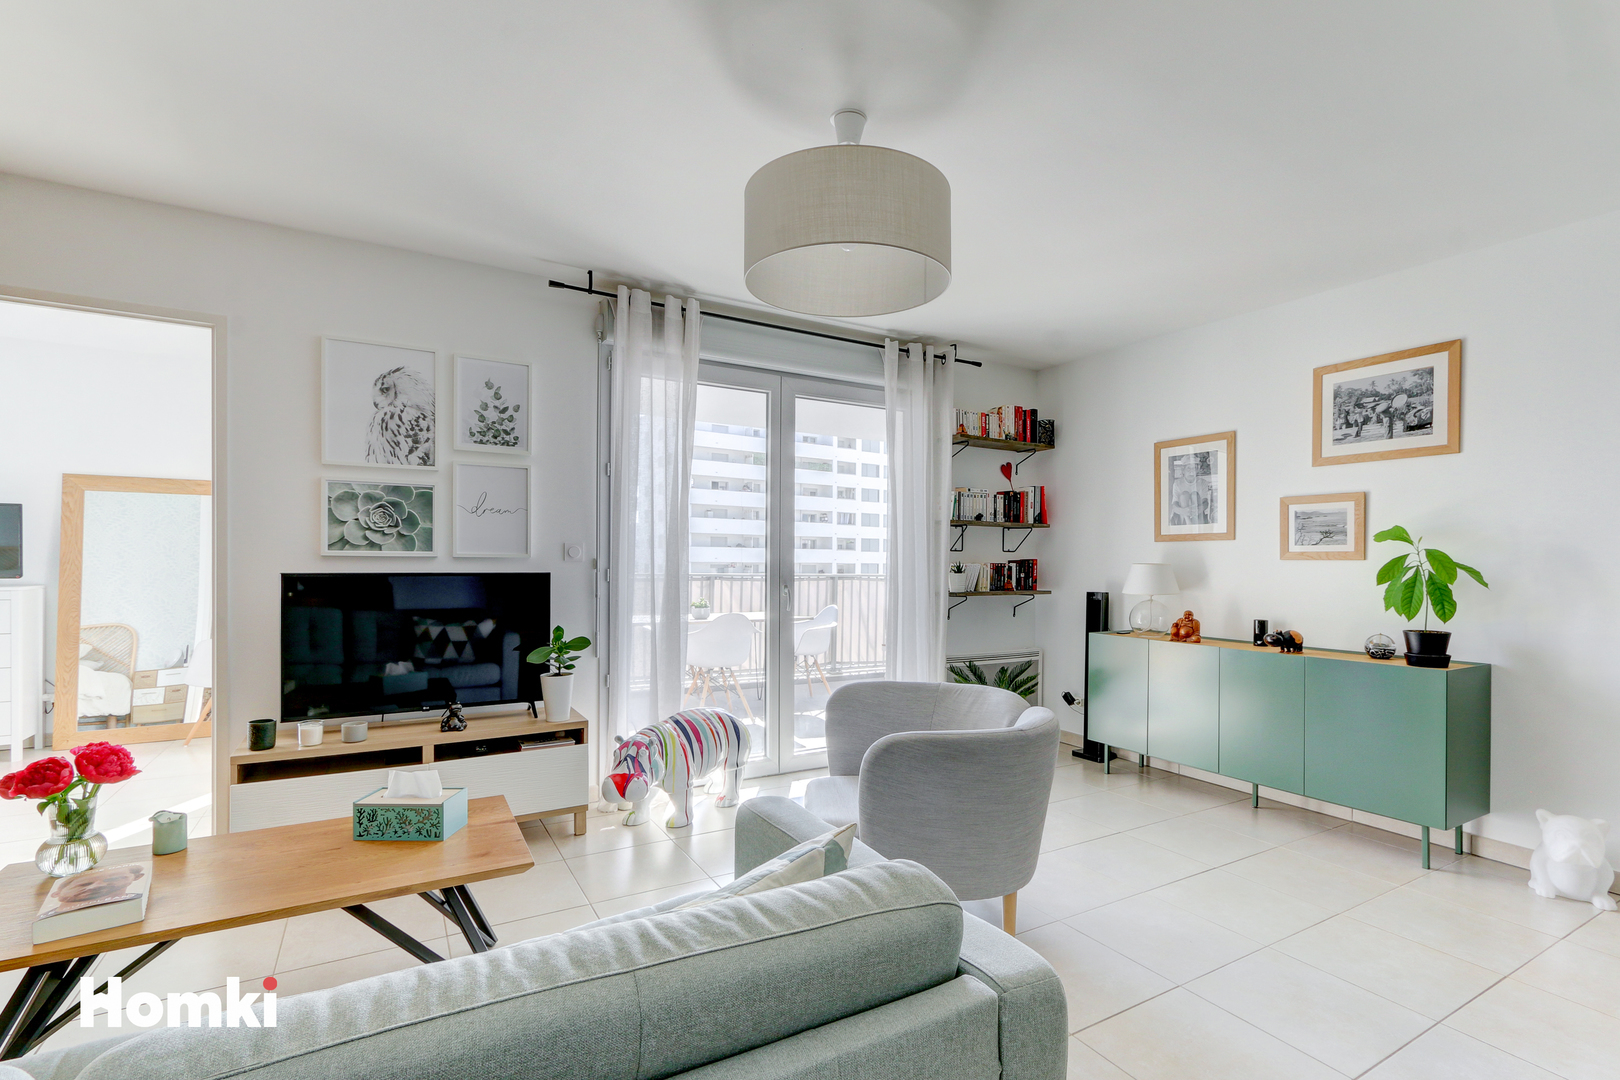 Homki - Vente Appartement  de 60.0 m² à Marseille 13003